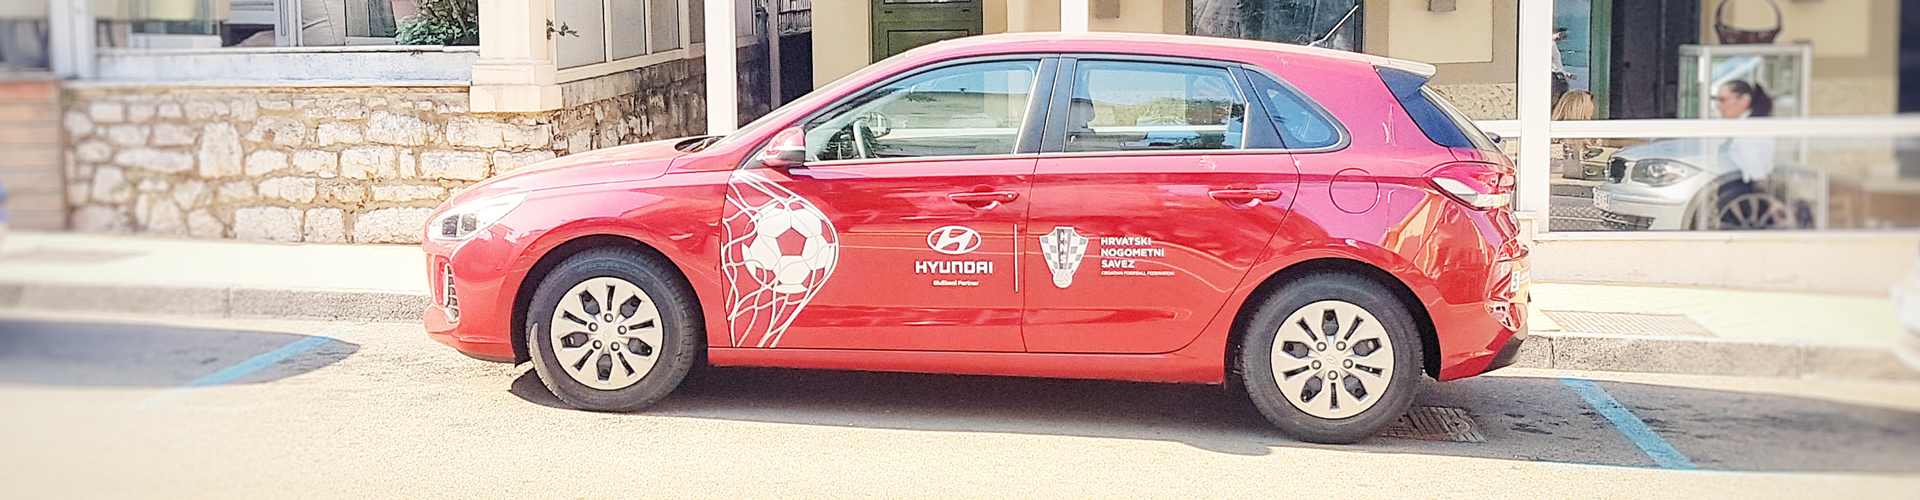 Hyundai je partner Hrvatskog nogometnog saveza